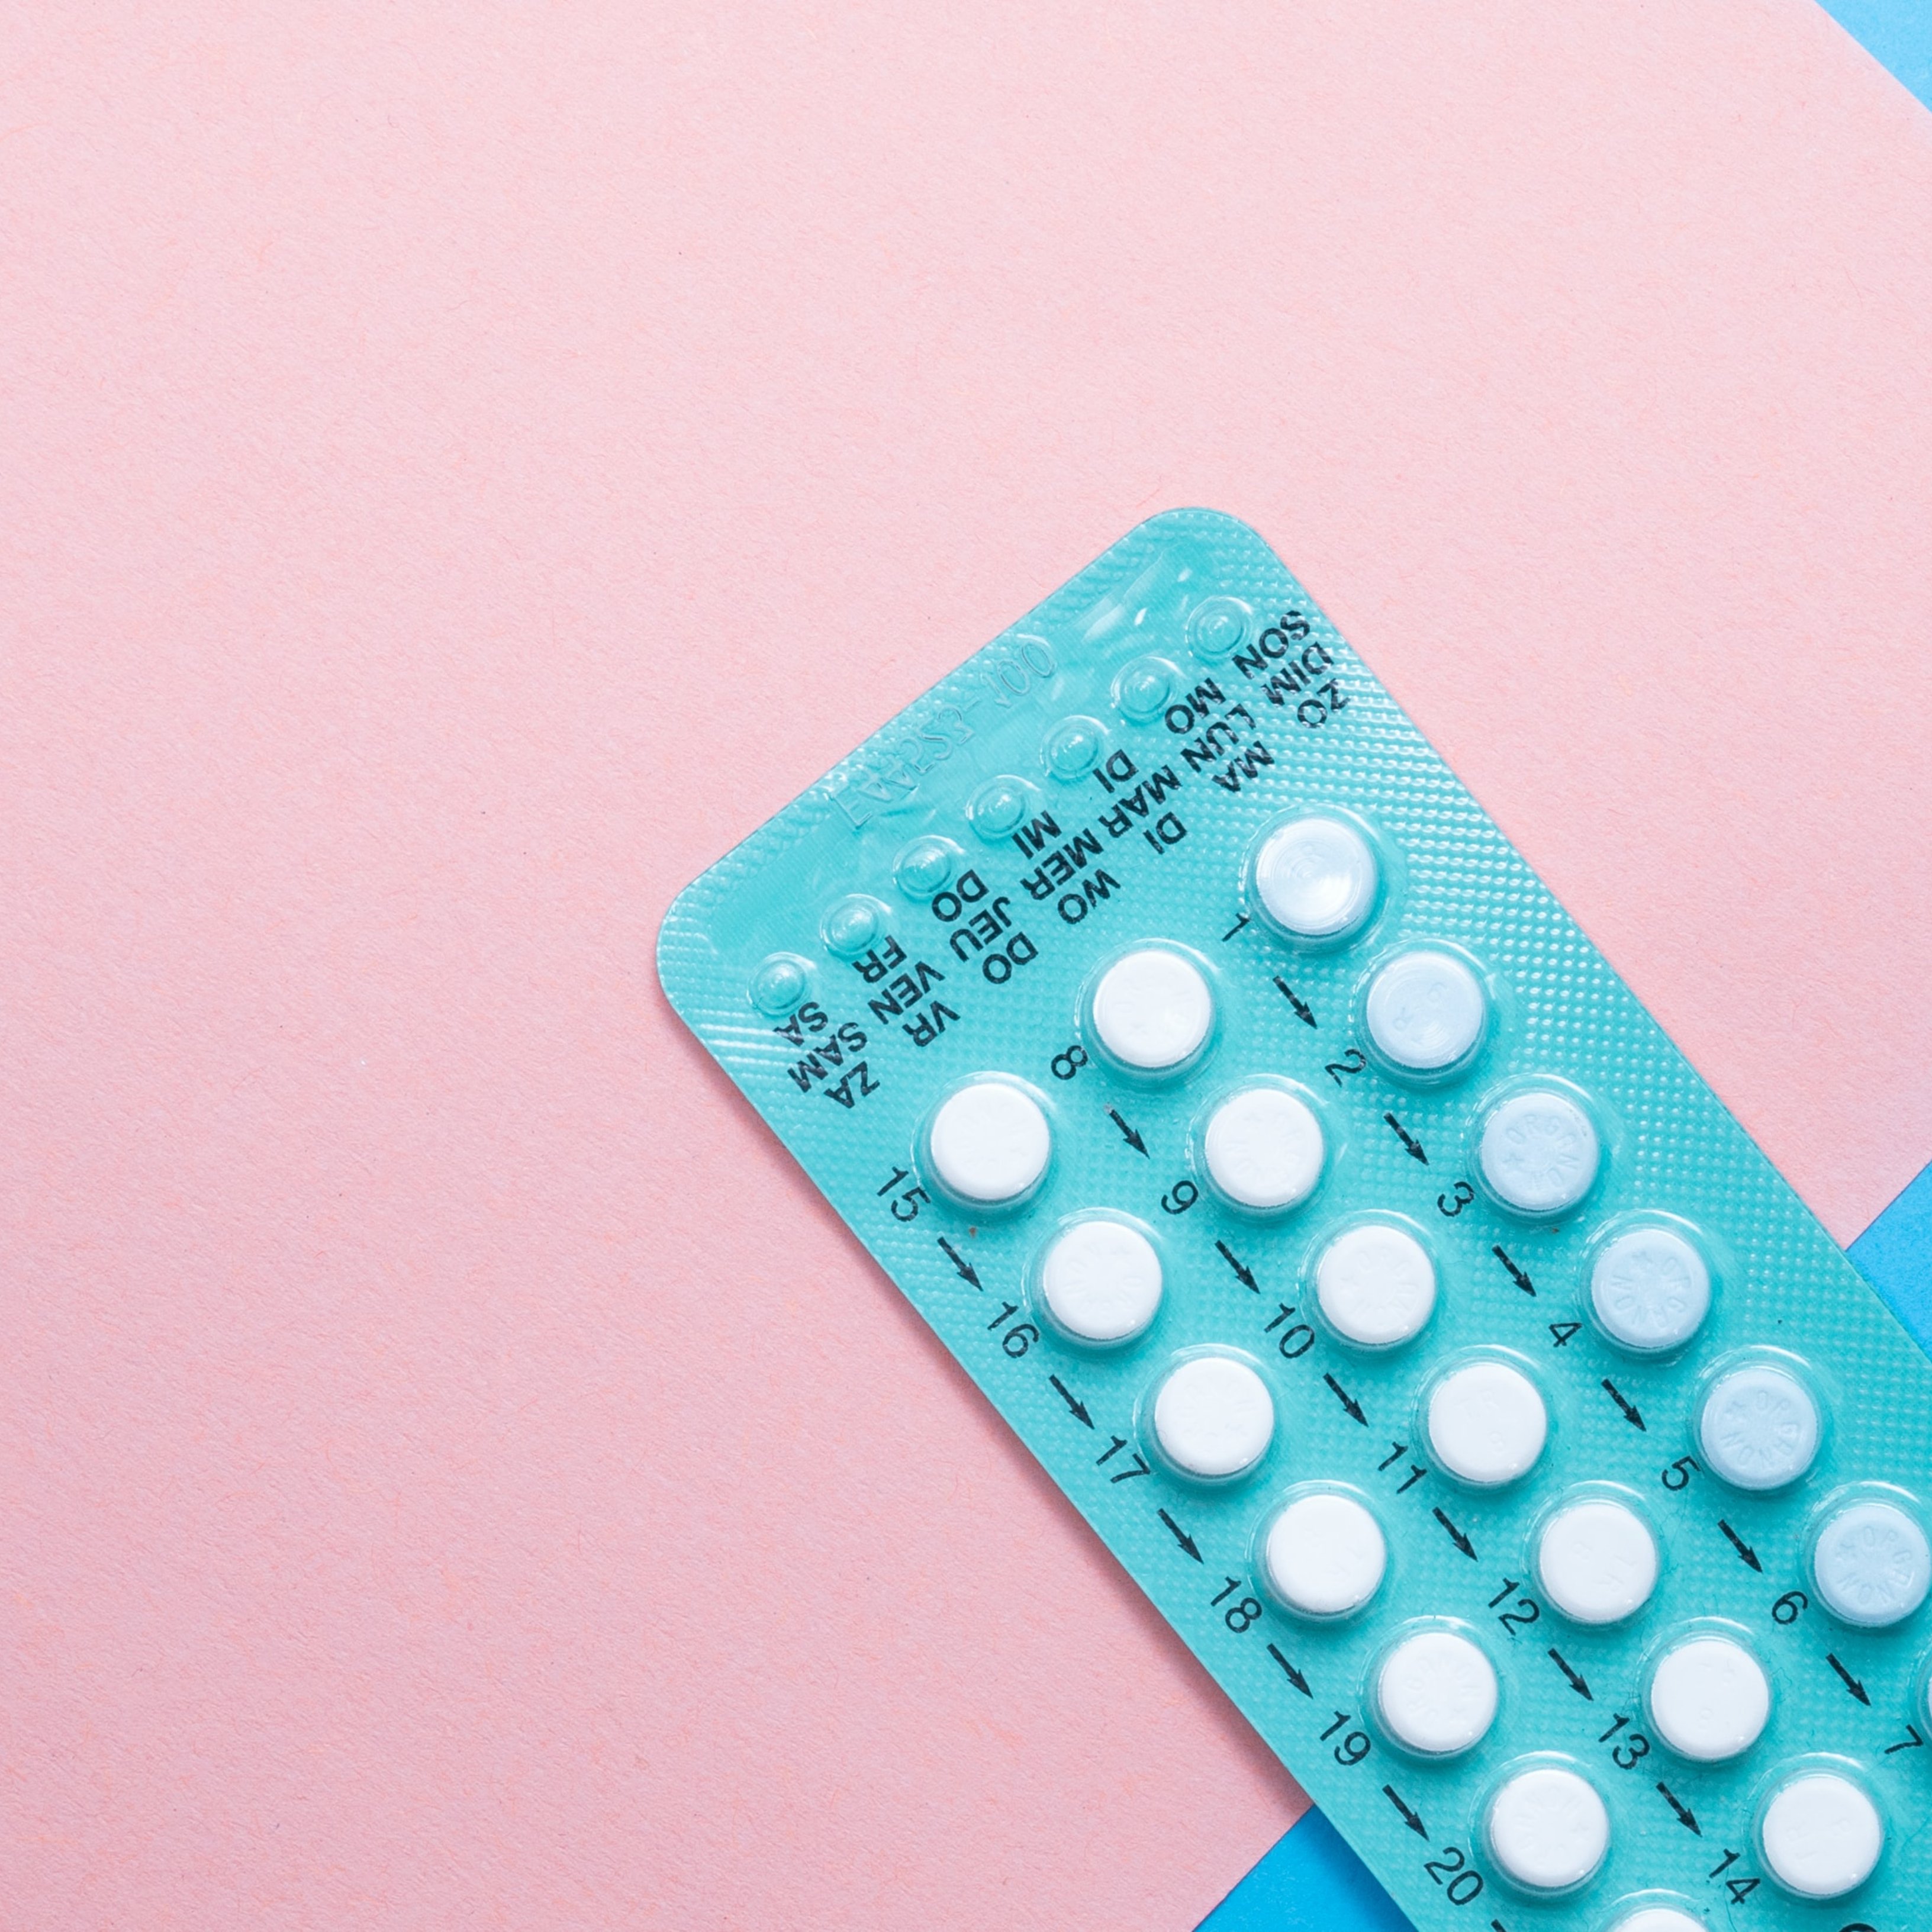 Prendre anticonceptius hormonals està relacionat amb menys intents de suïcidi